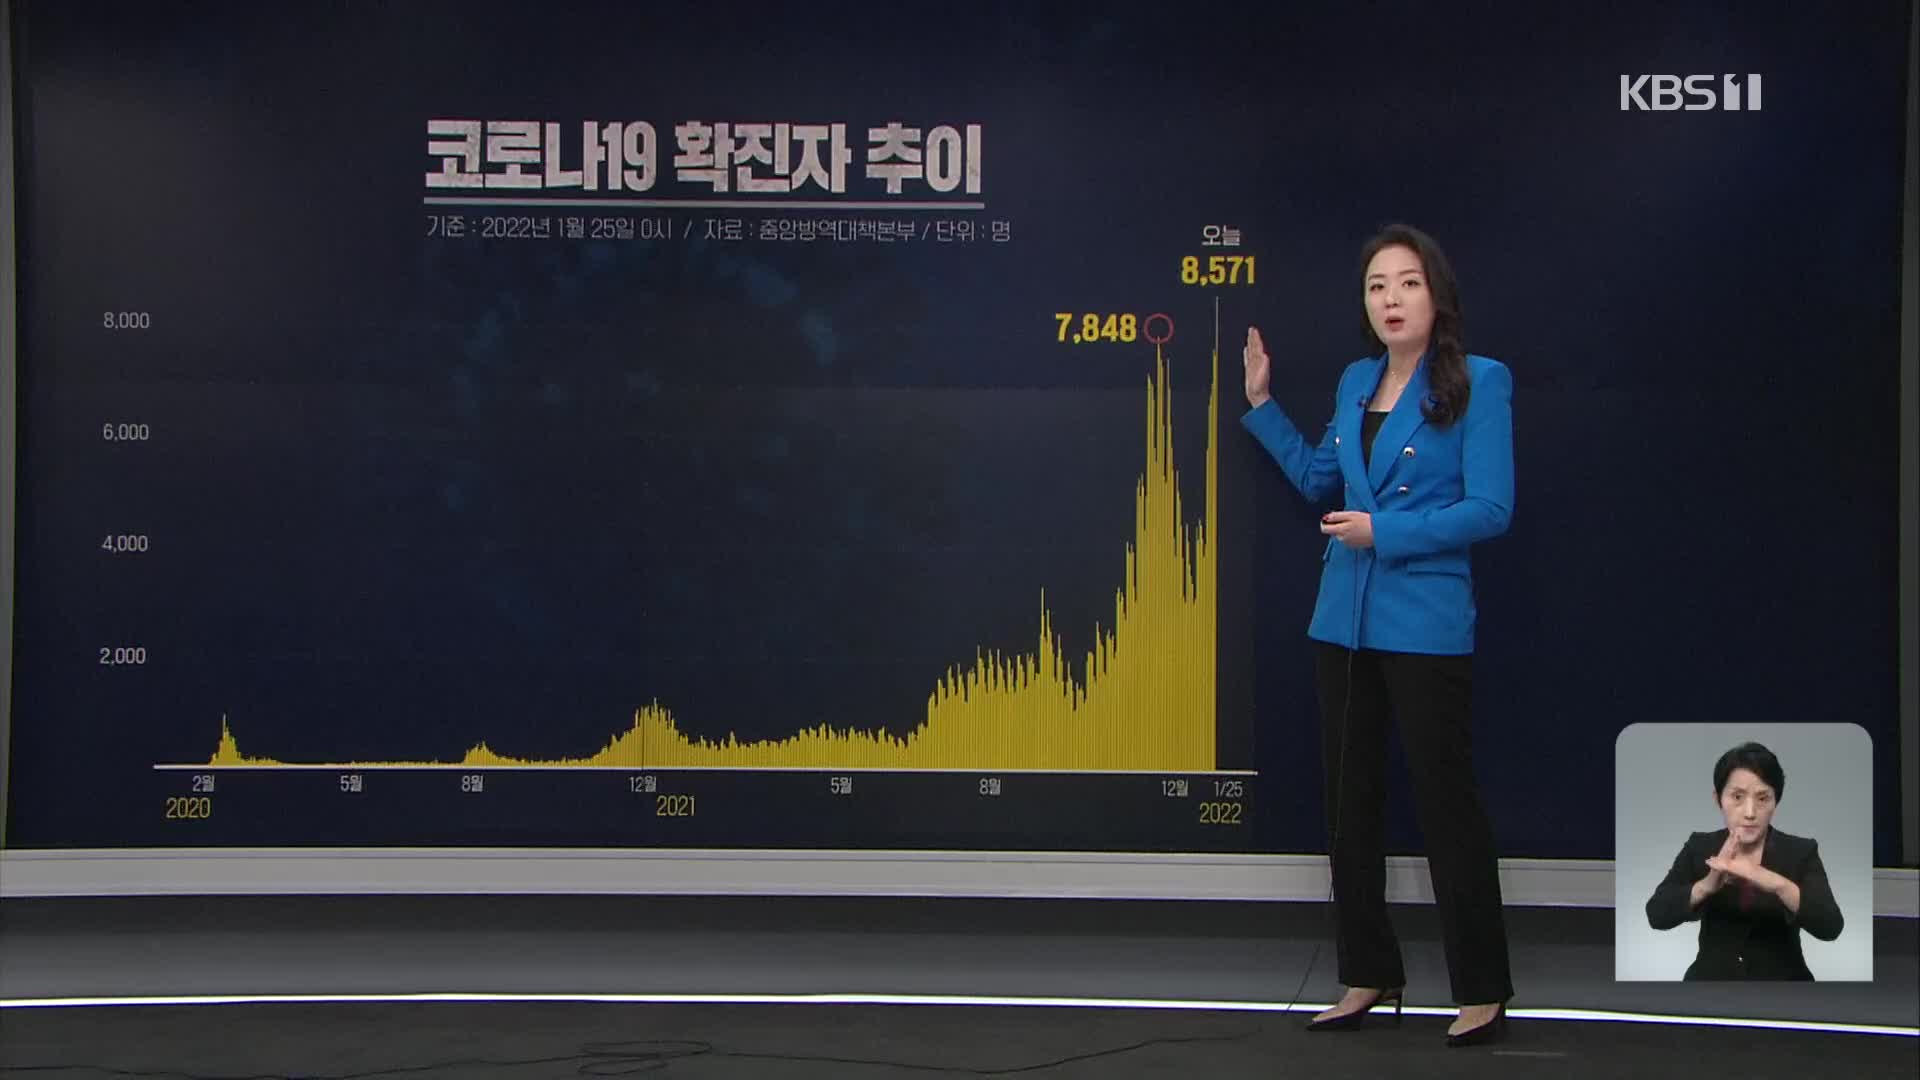 신규 확진 8,571명 ‘역대 최다’…5차 유행 본격화